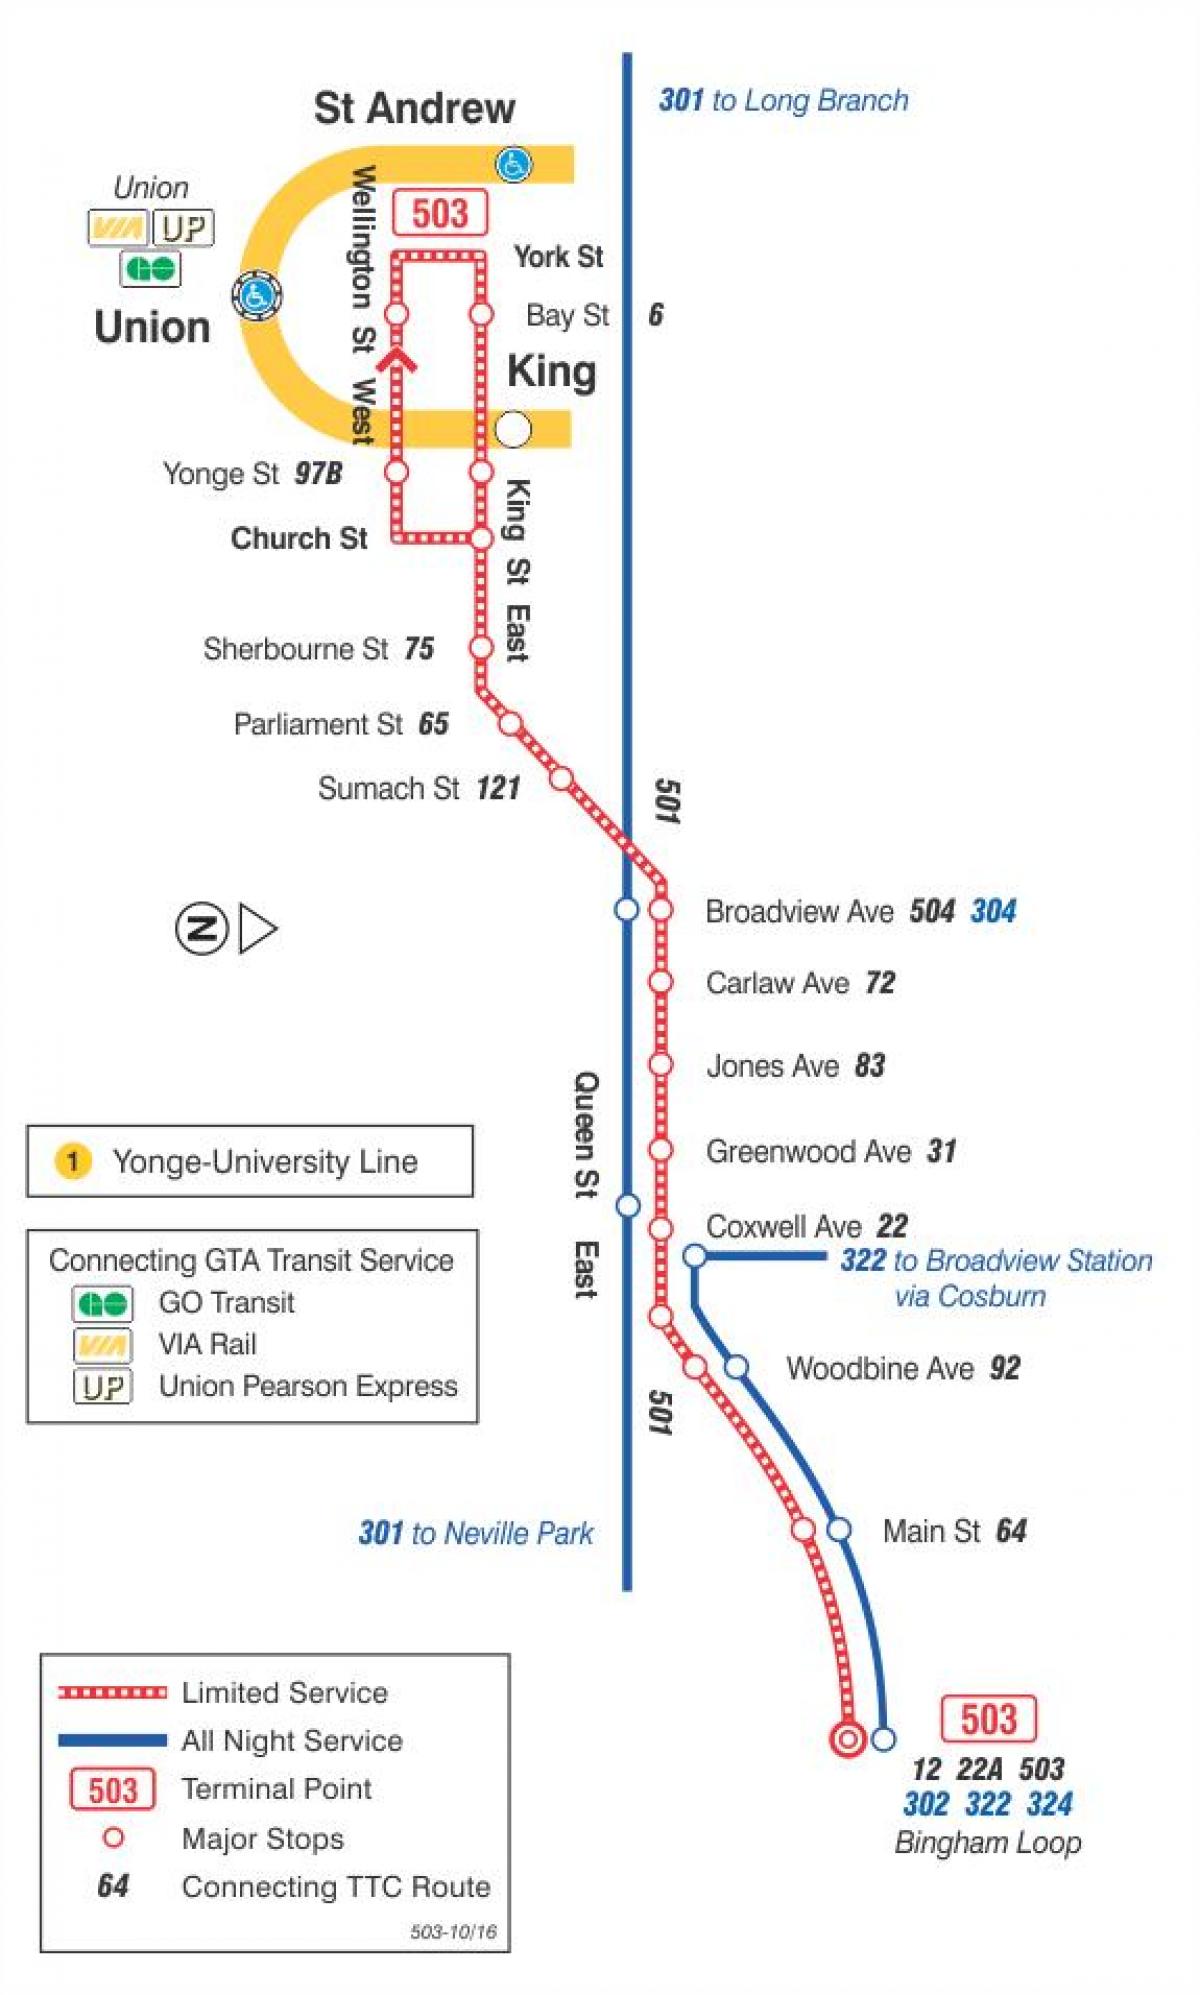 რუკა streetcar line 503 Kingston გზის